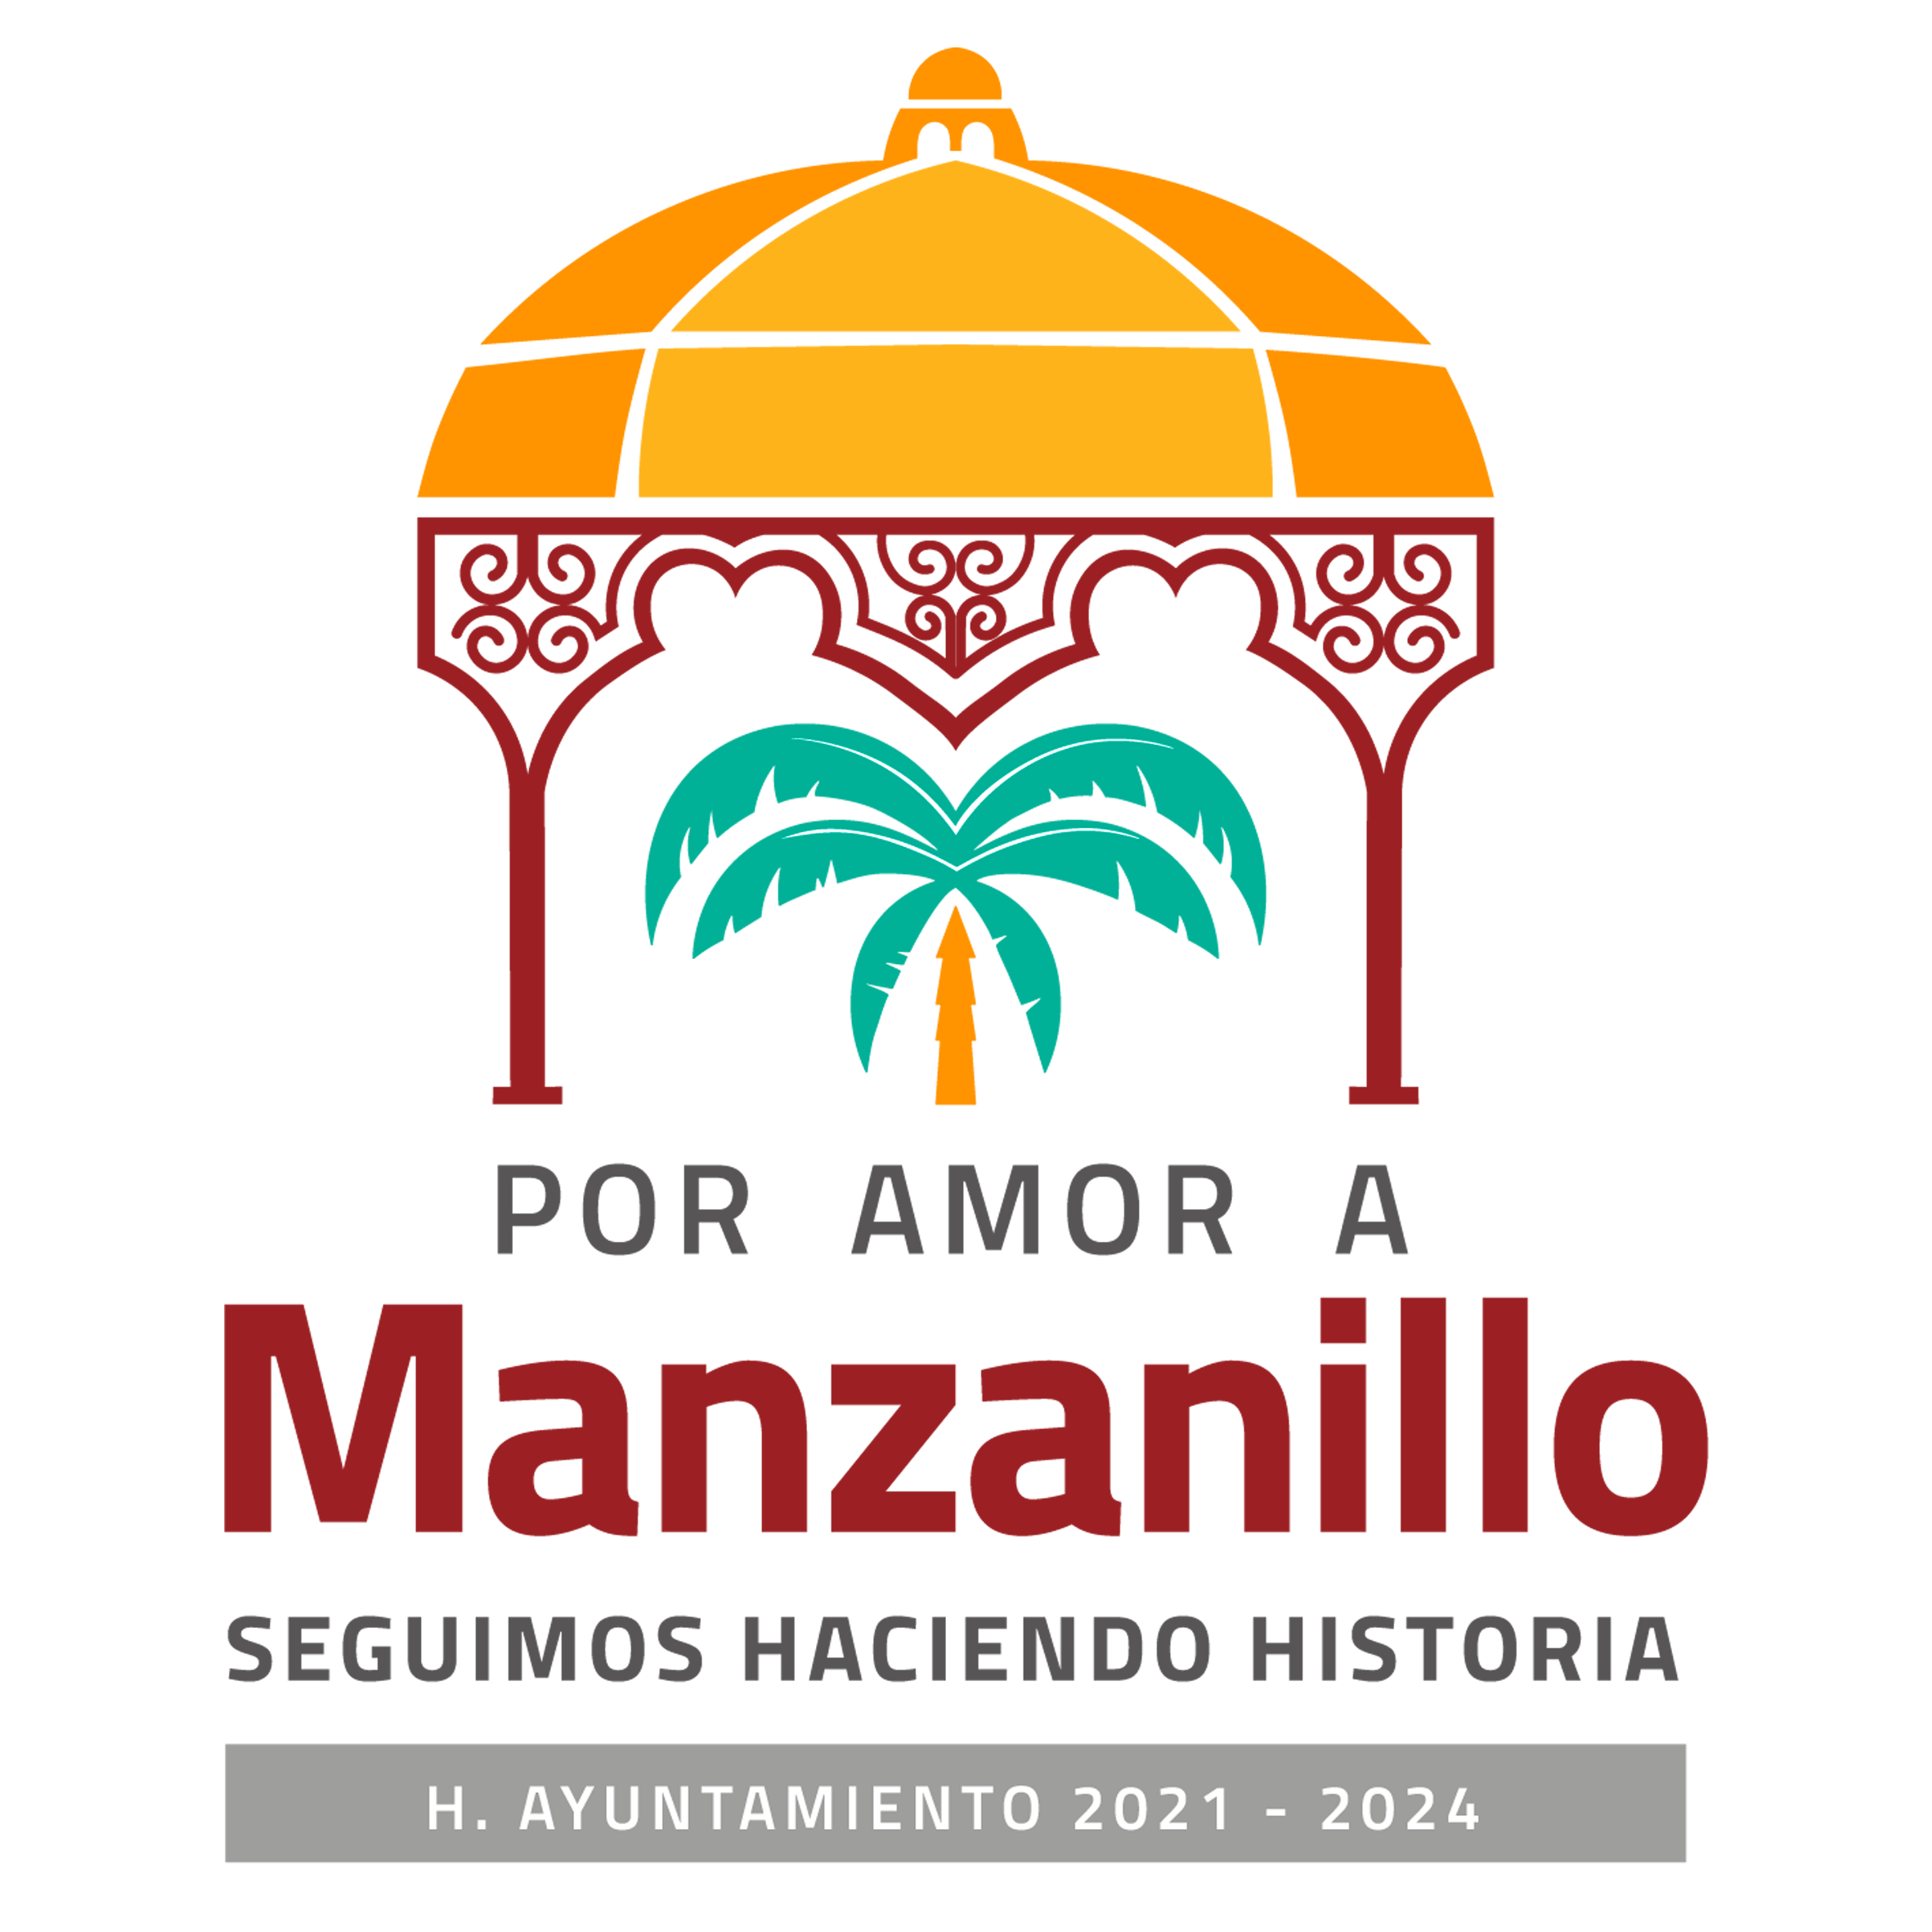 H. Ayuntamiento de Manzanillo